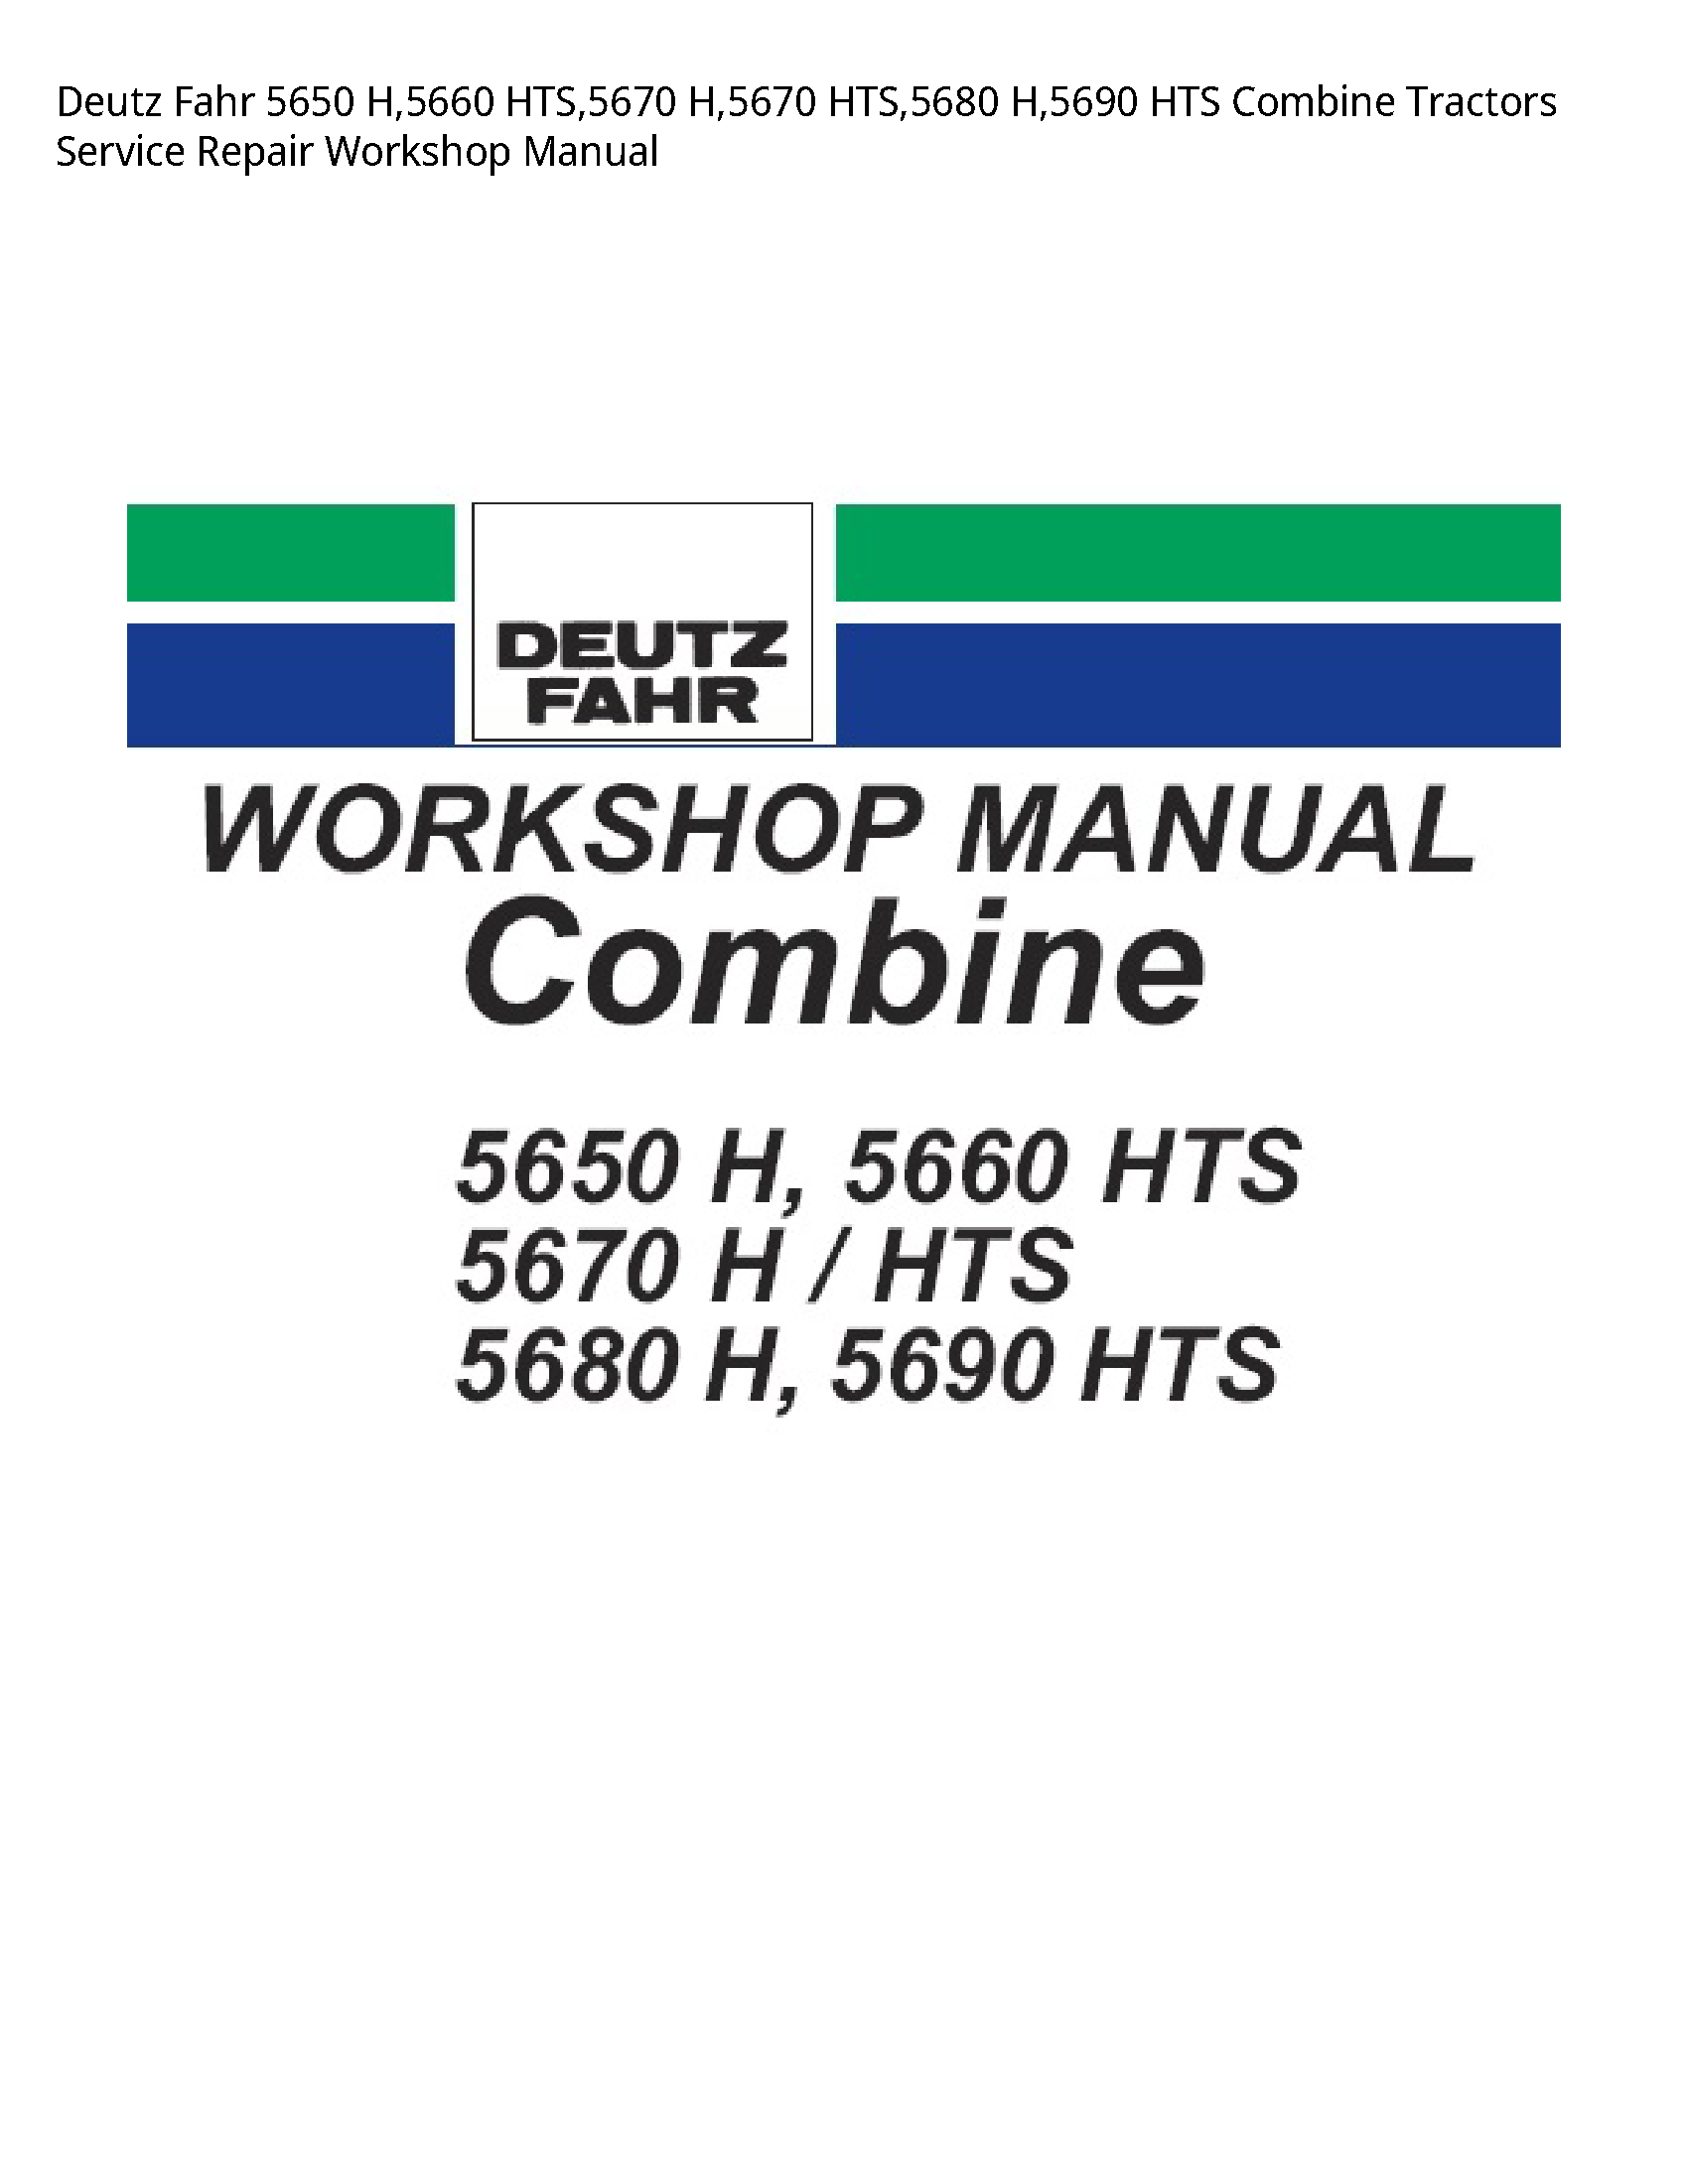 Deutz 5650 Fahr HTS Combine Tractors manual